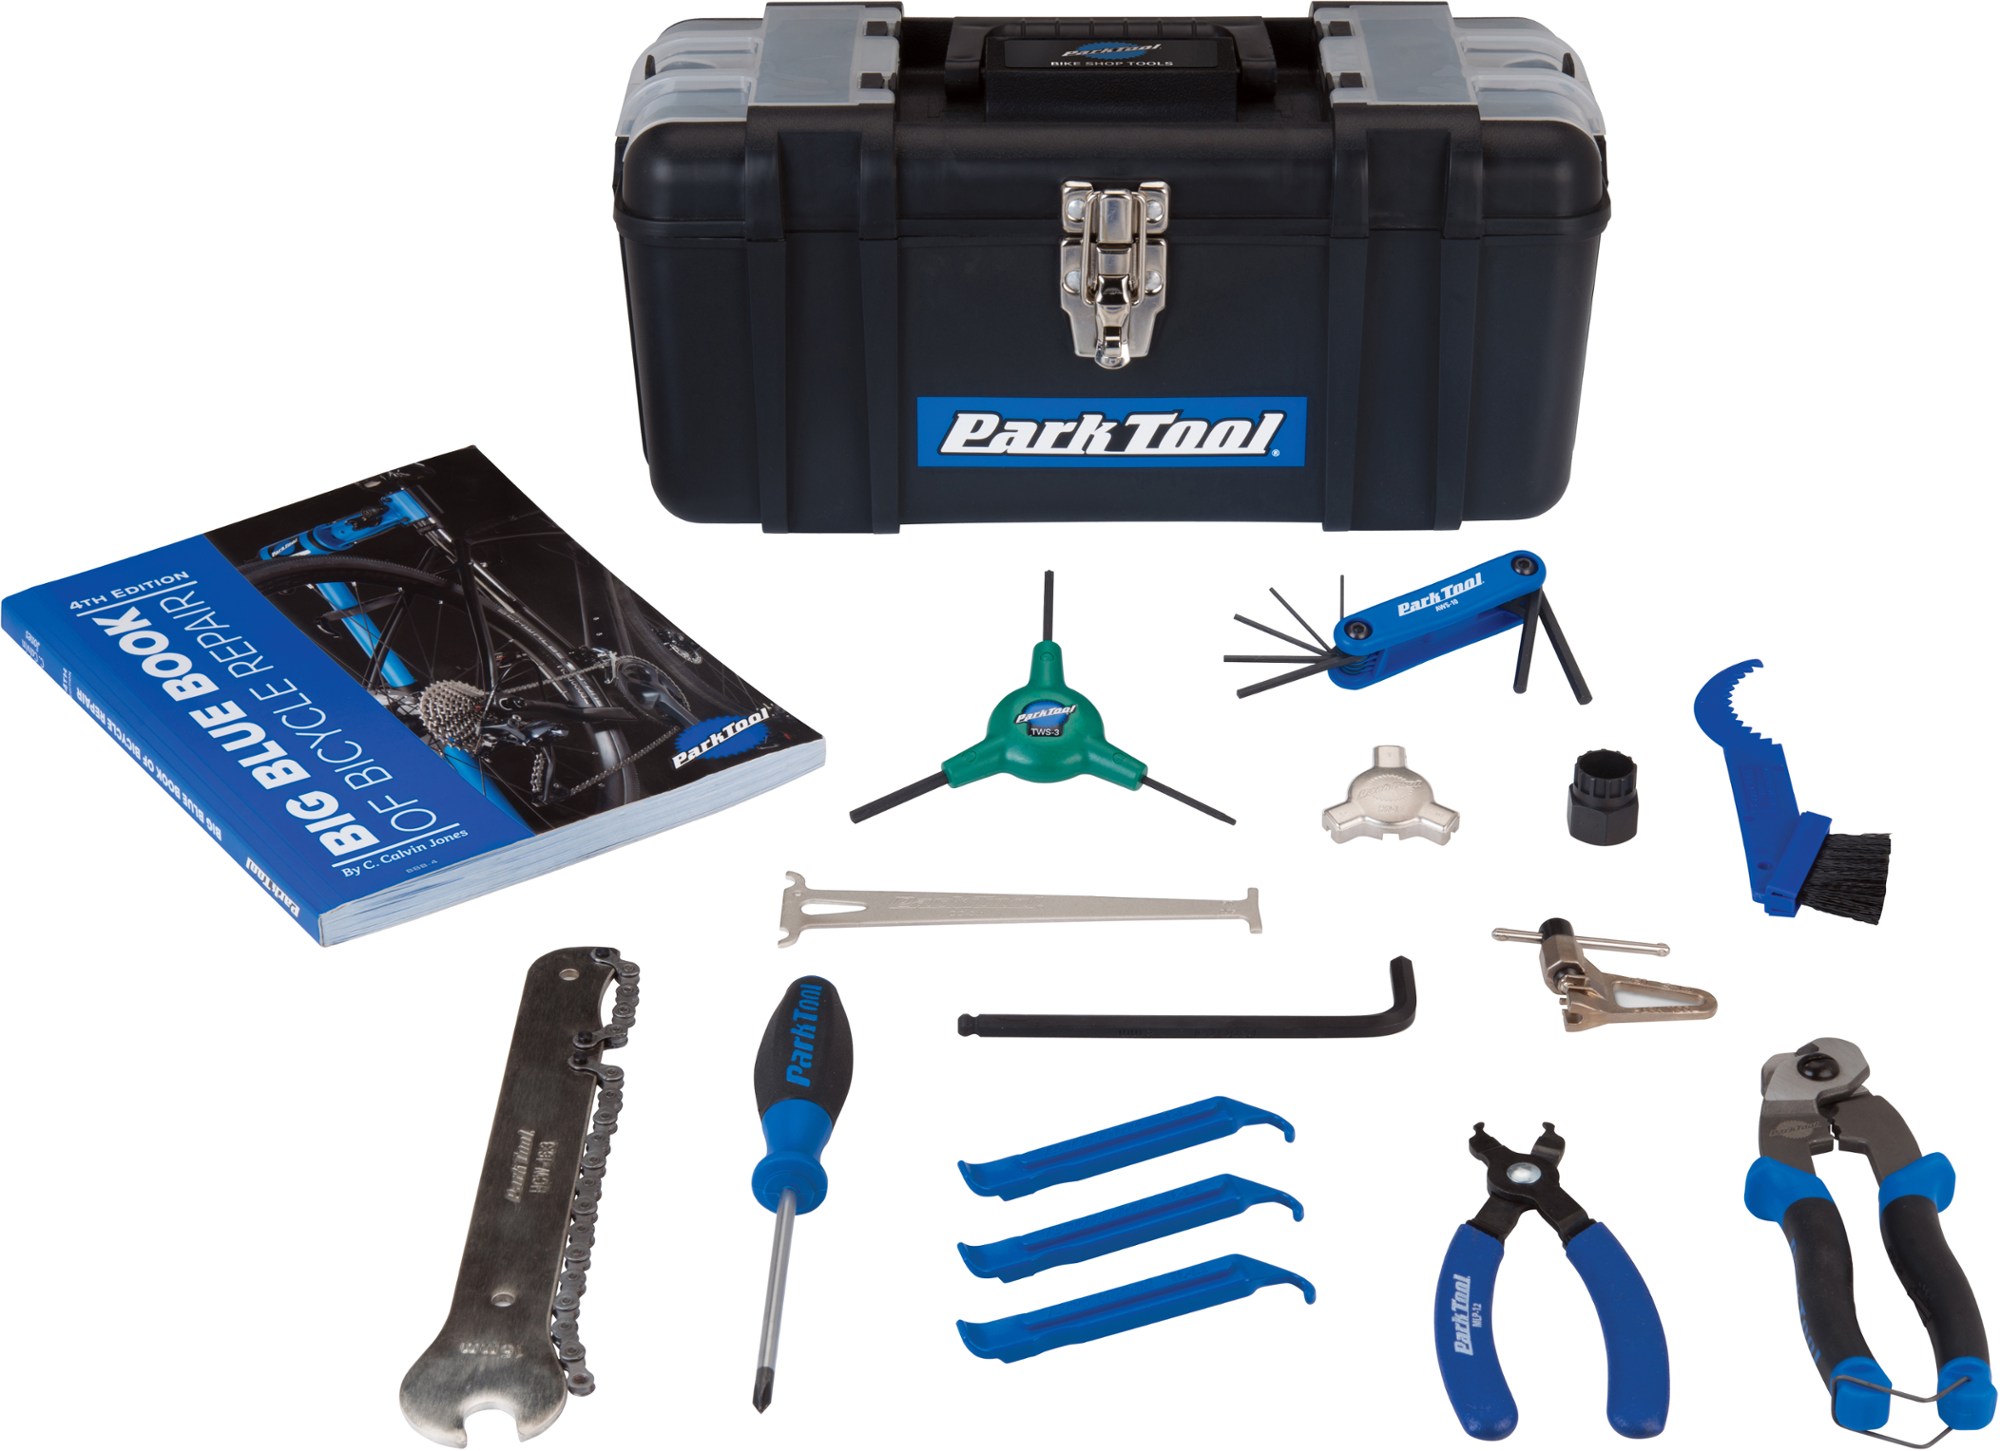 Стартовый набор для домашнего механика SK-4 Park Tool стенд для ремонта велосипеда pcs 10 3 deluxe для домашнего механика park tool синий